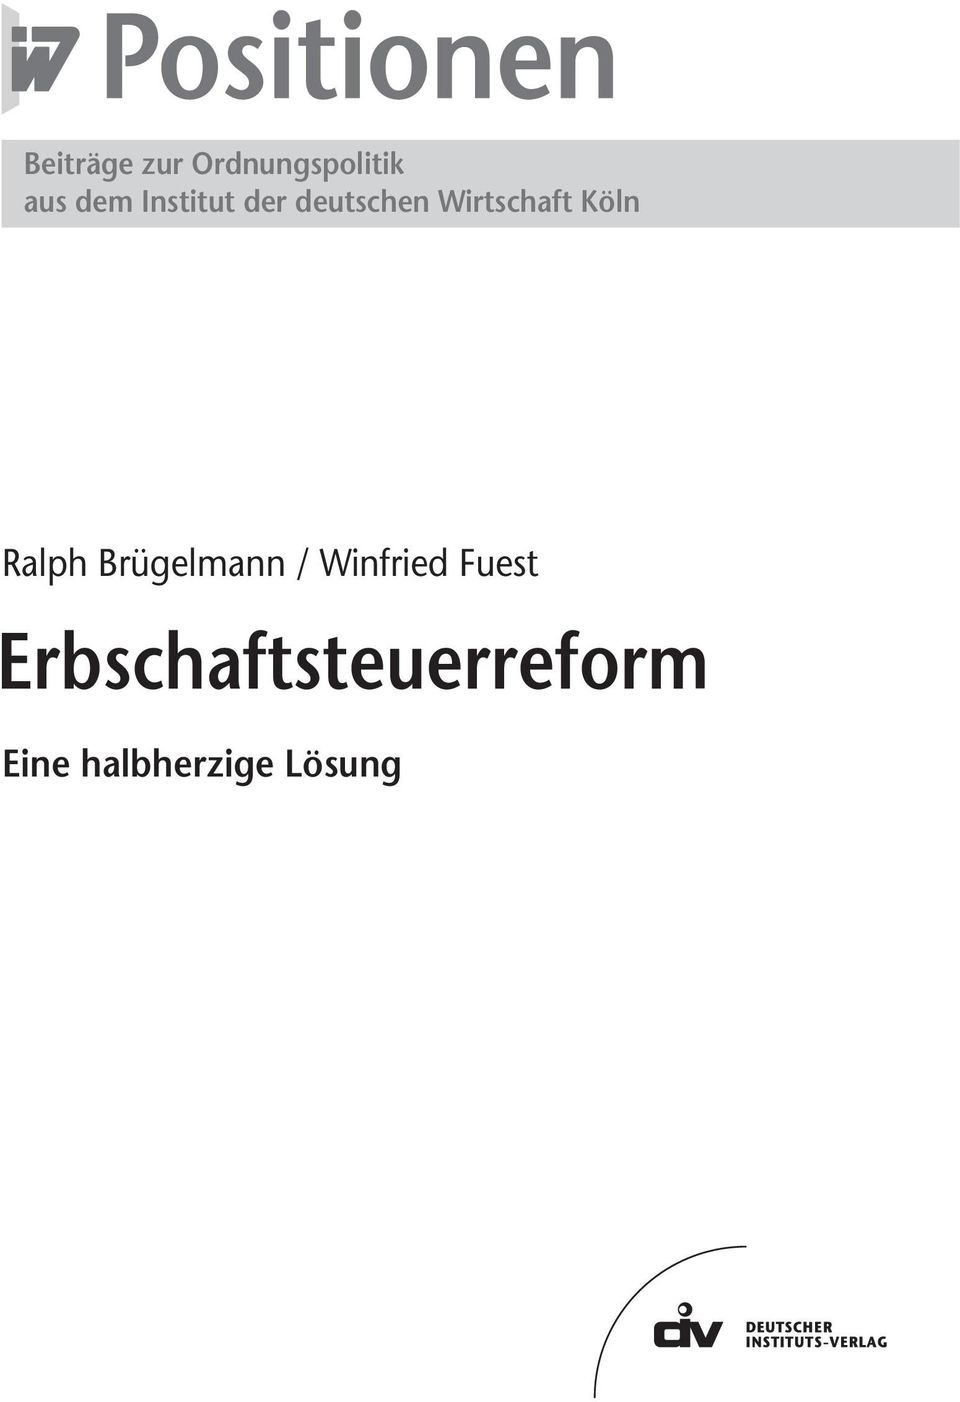 Ralph Brügelmann / Winfried Fuest